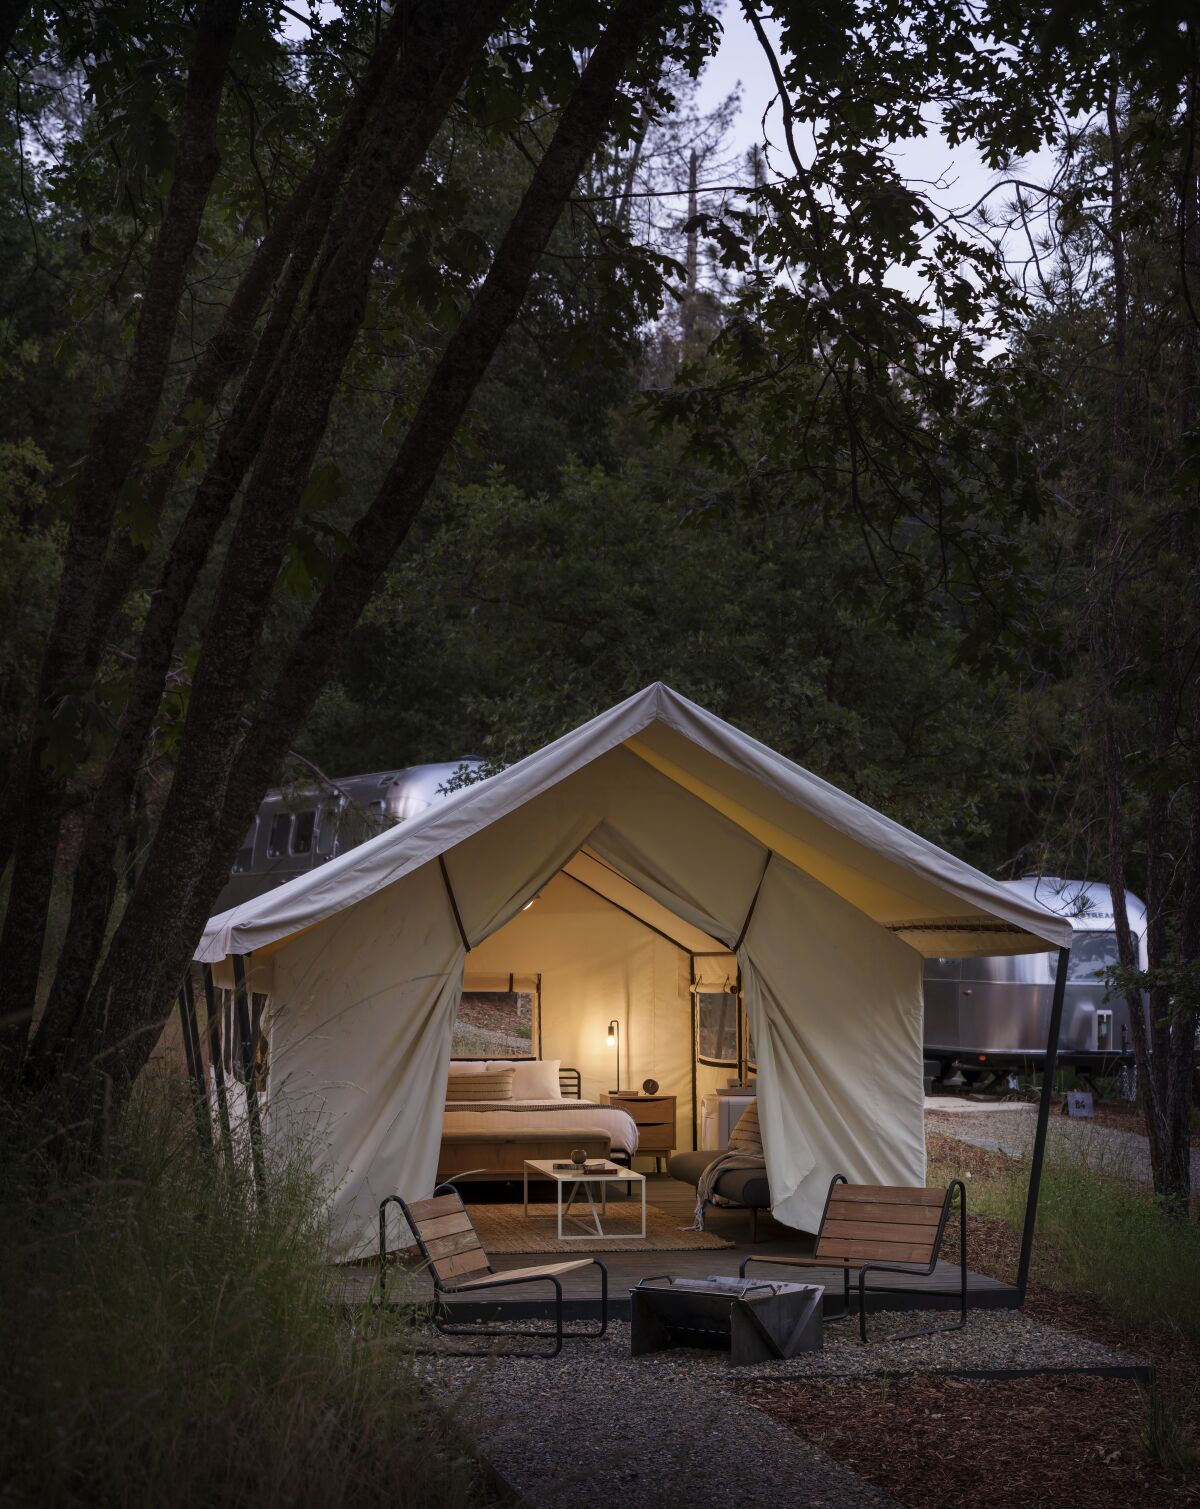 A glamping tent at night at AutoCamp at Yosemite